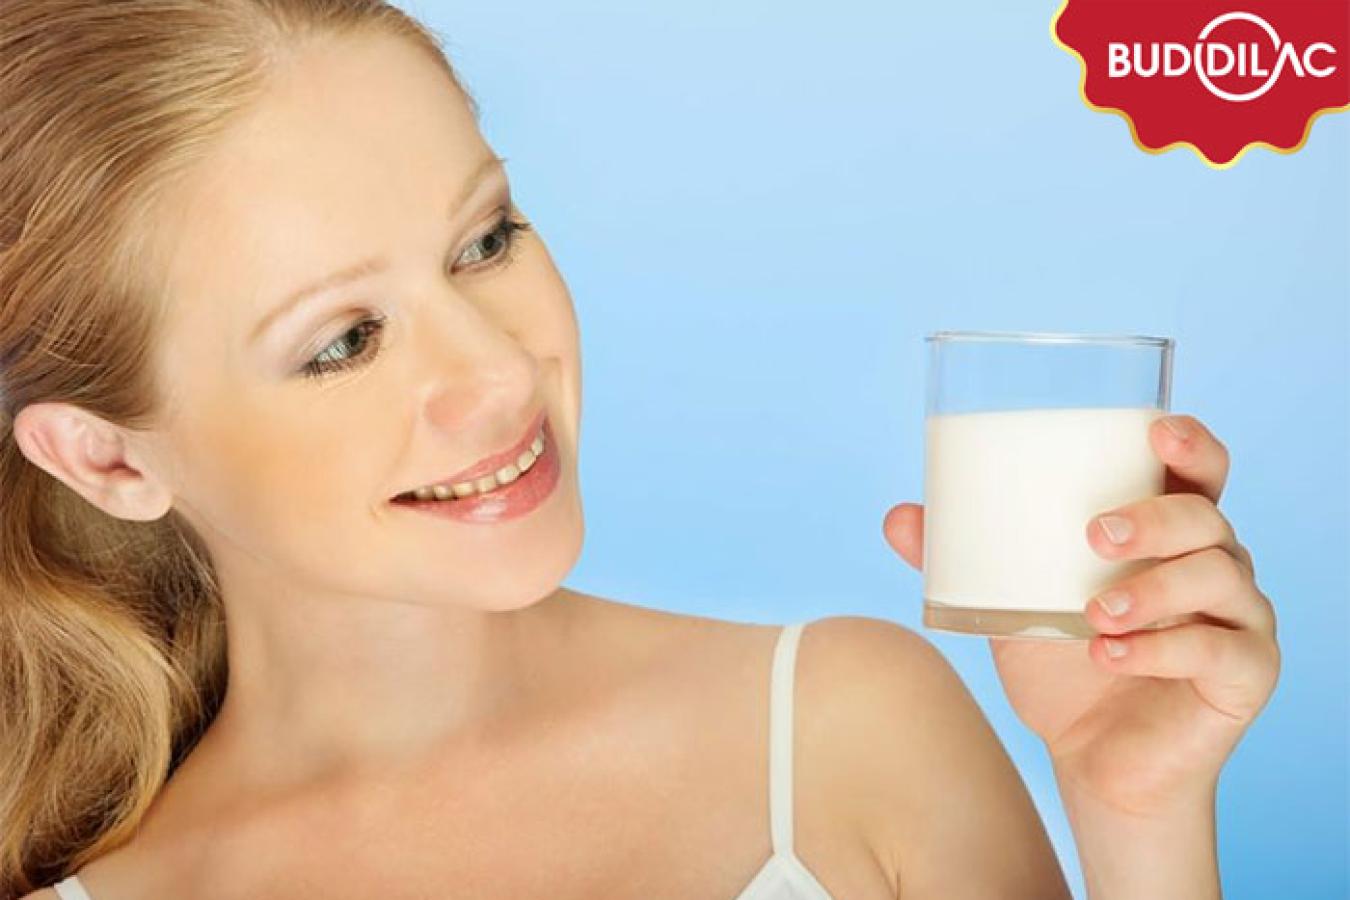 Chuyên gia chia sẻ: Người bình thường uống sữa tiểu đường được không?